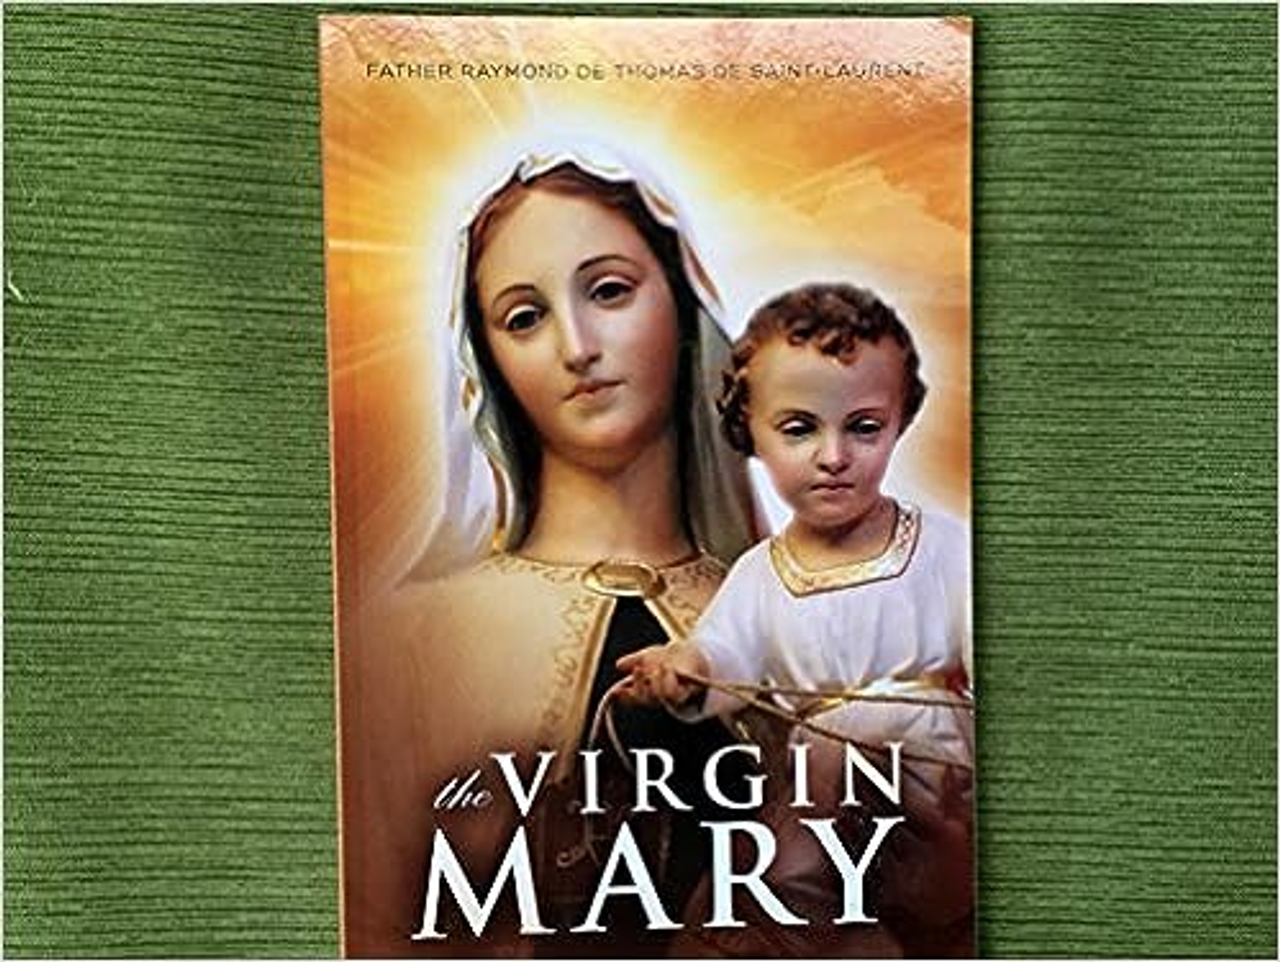 The Virgin Mary by Fr. Raymond de Thomas de Saint-Laurent